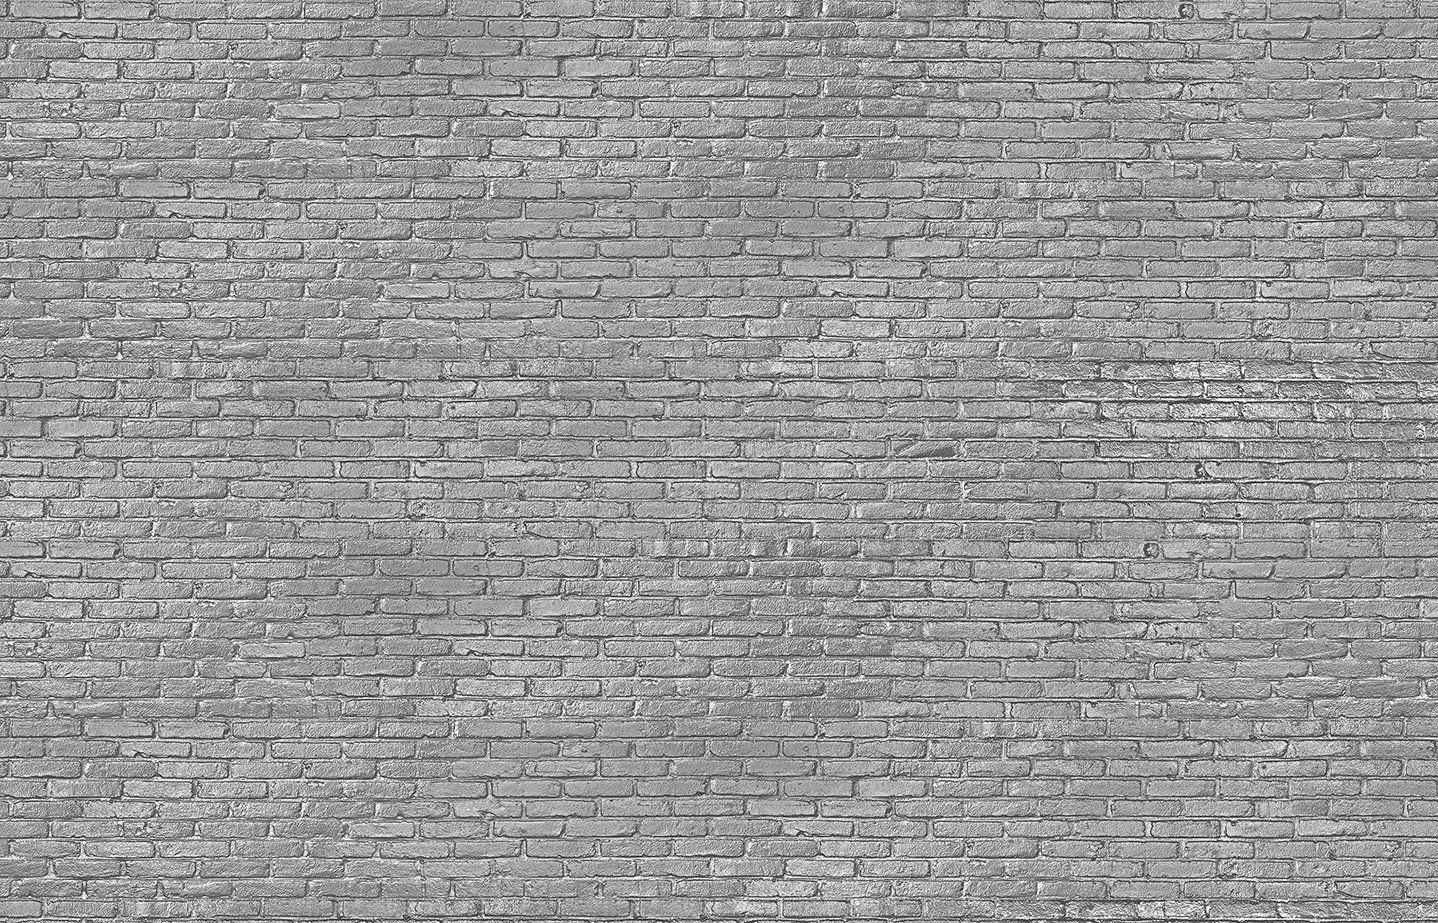 Hình nền gạch xám bạc 1438x923 thiết kế bởi Piet Hein Eek cho Hình nền NLXL - BURKE DECOR